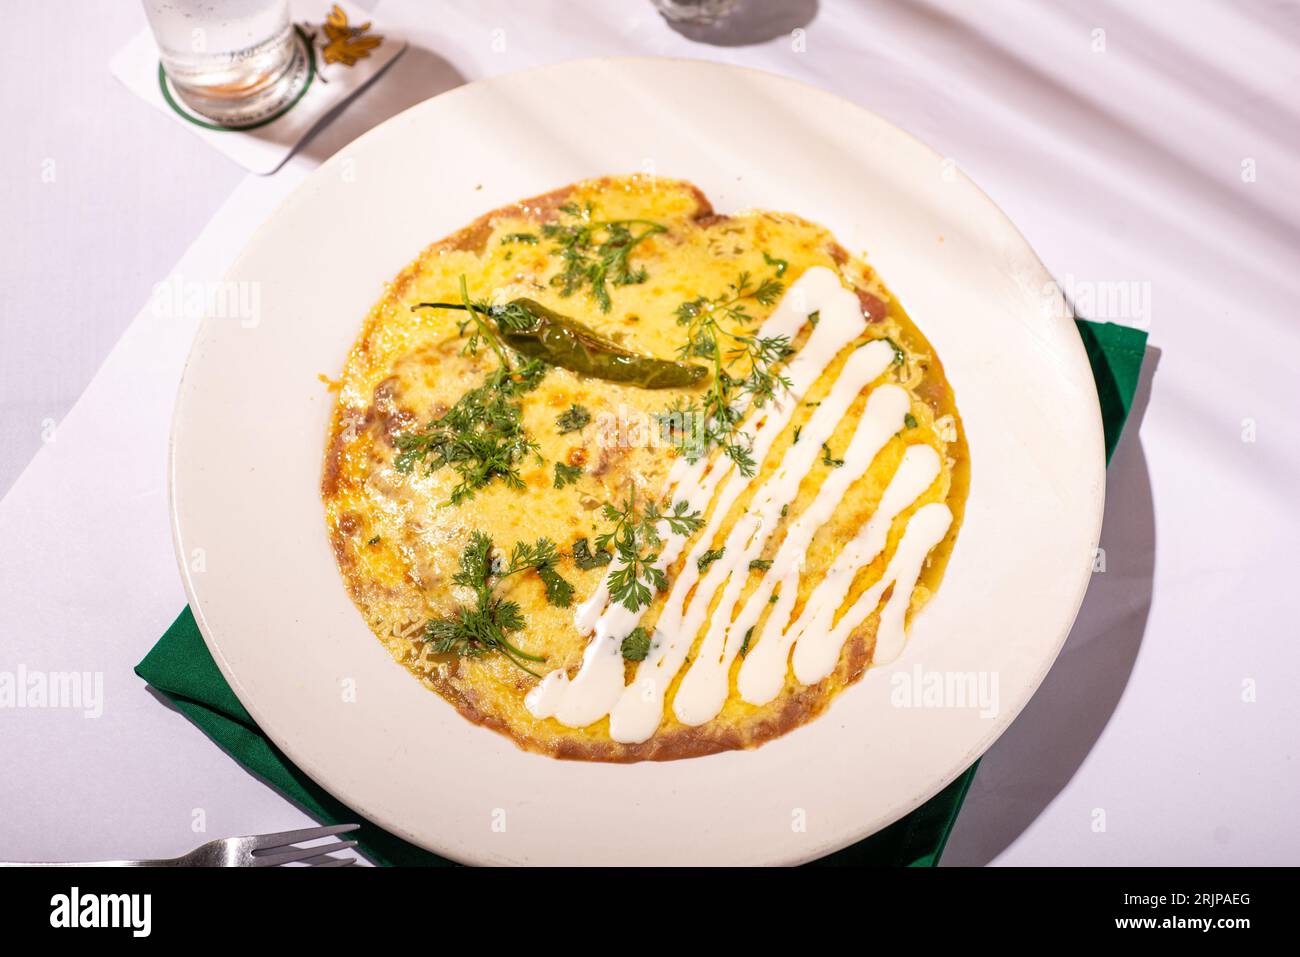 Une omelette appétissante avec des légumes frais et des herbes sur une assiette blanche, prête à être dégustée Banque D'Images